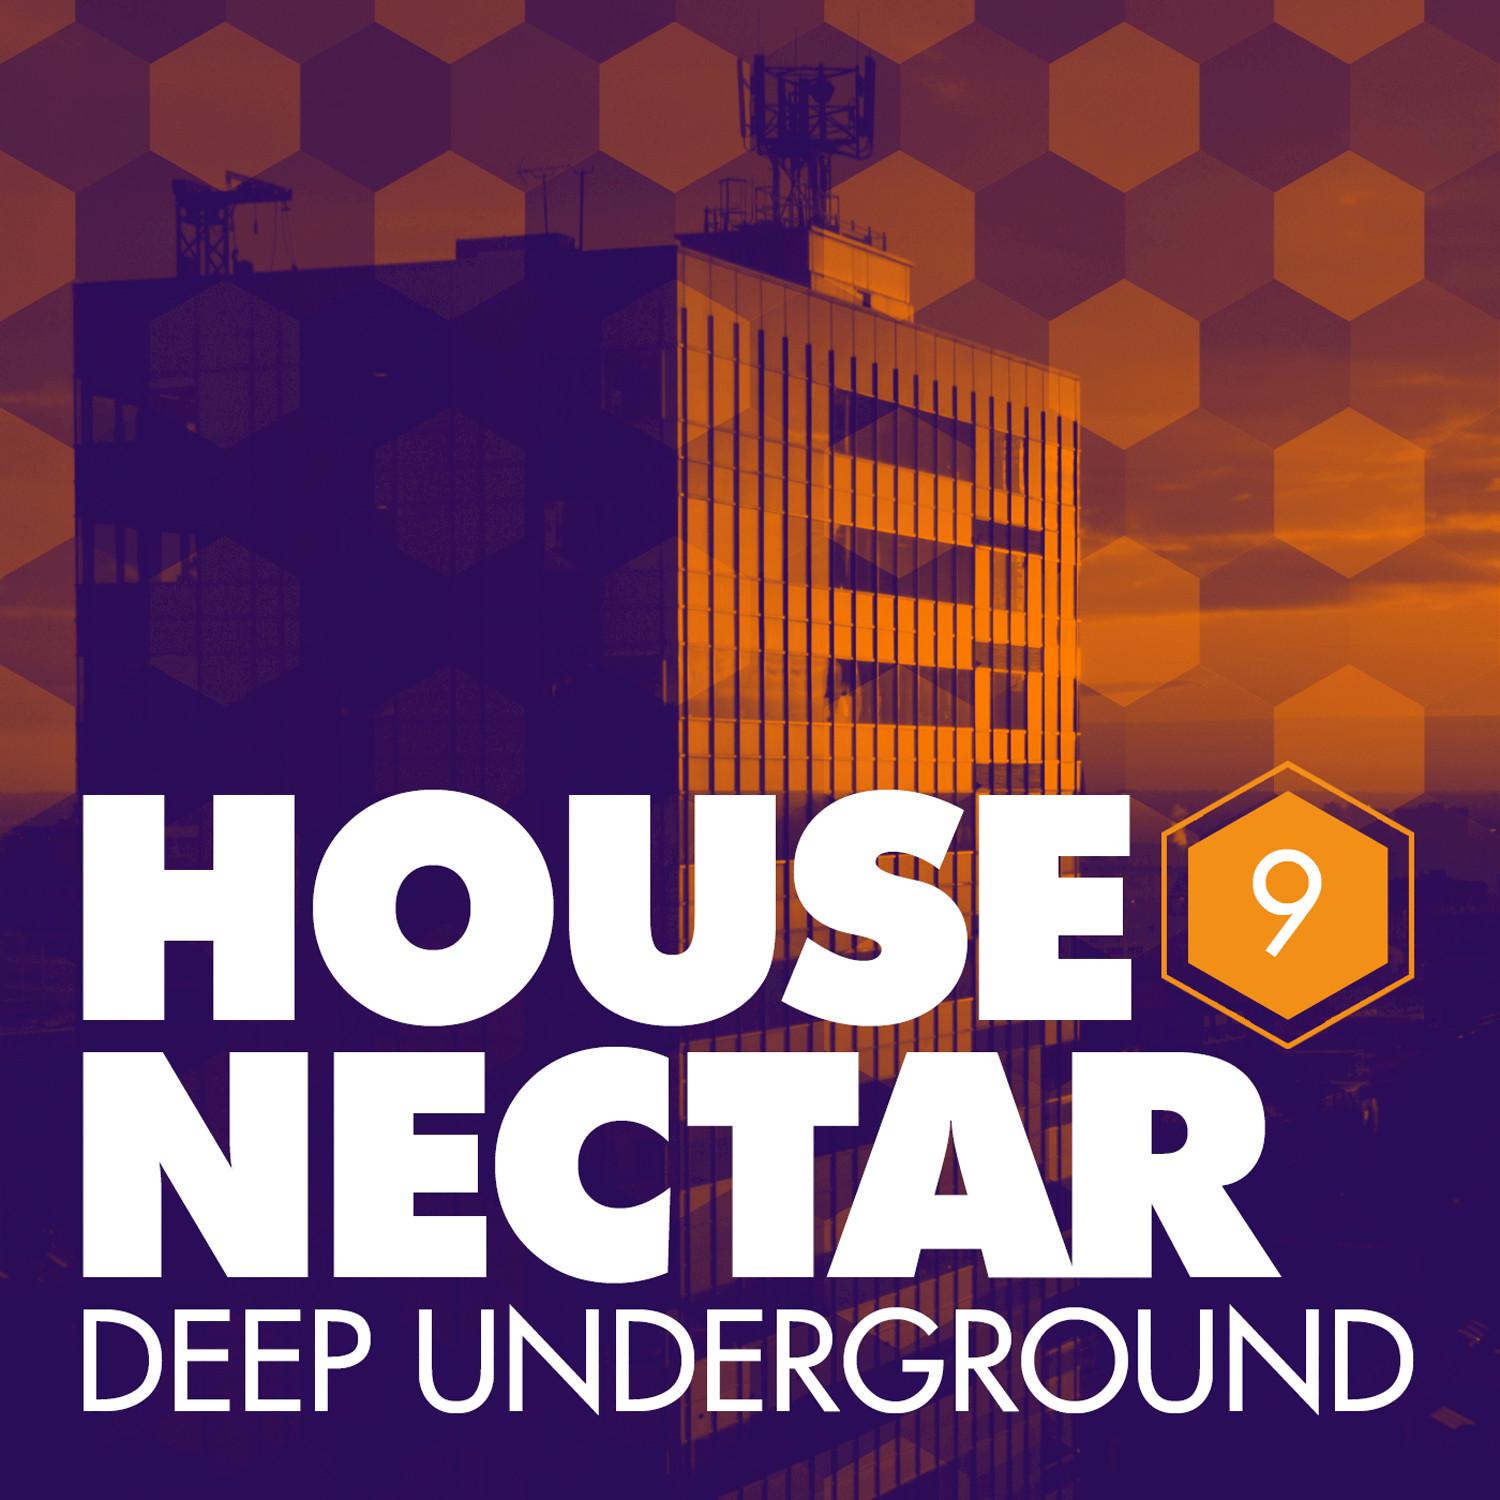 Underground House Nectar, Vol. 9